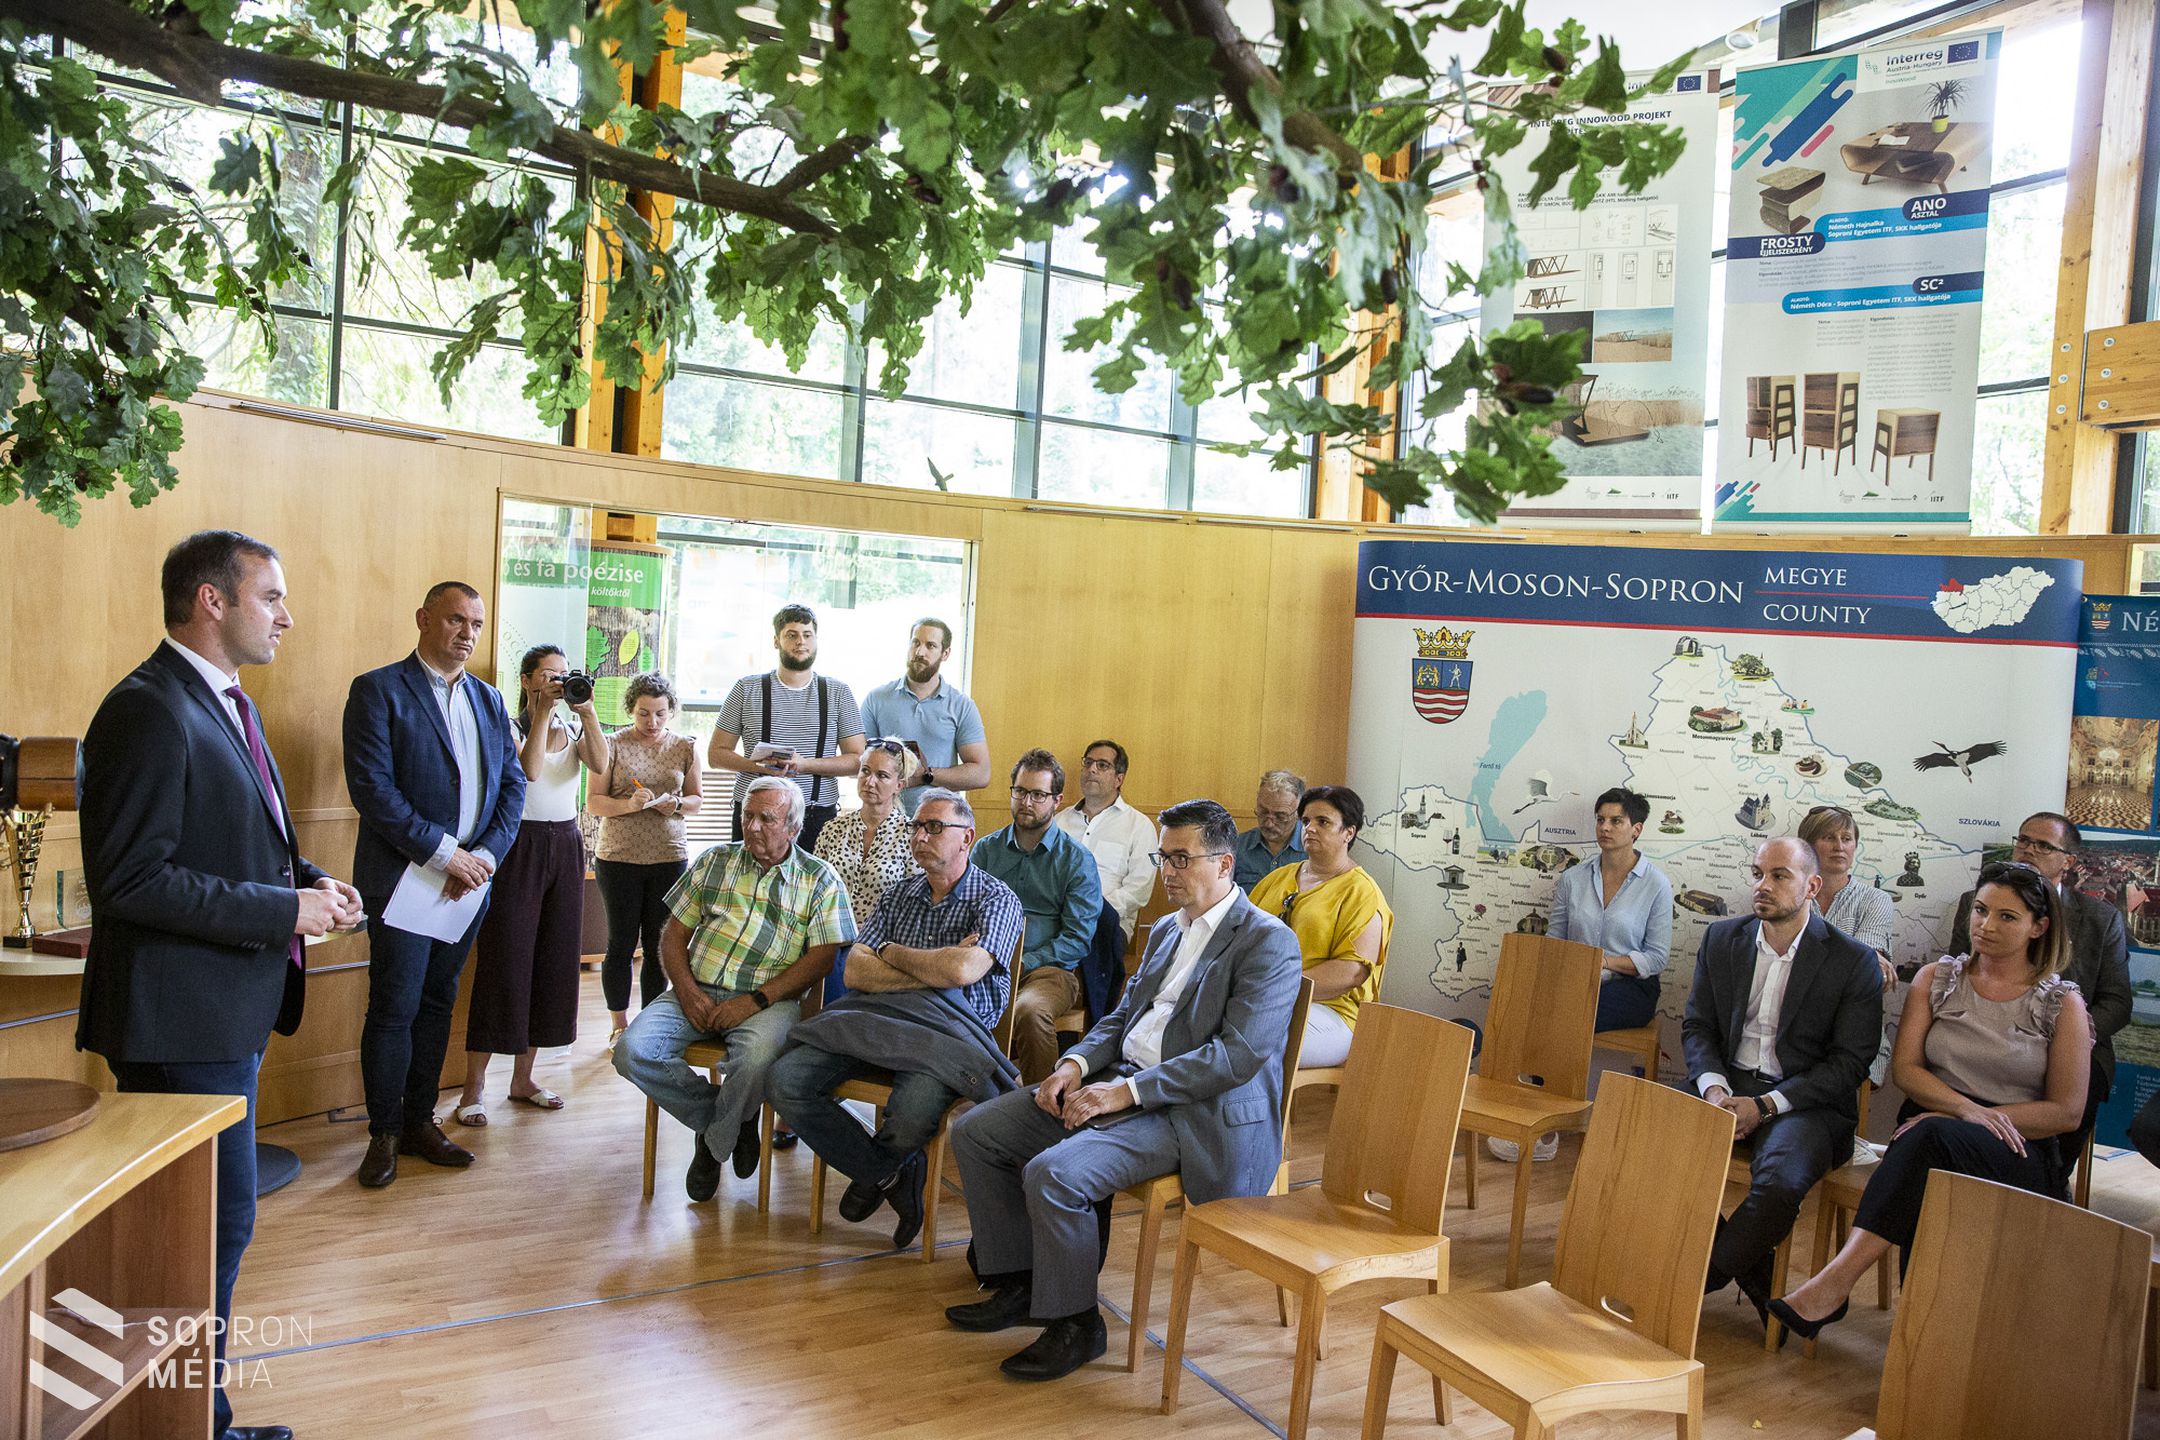 Sopronban rendezték a 19. Győr-Moson-Sopron megyei borversenyt és szakmai konferenciát